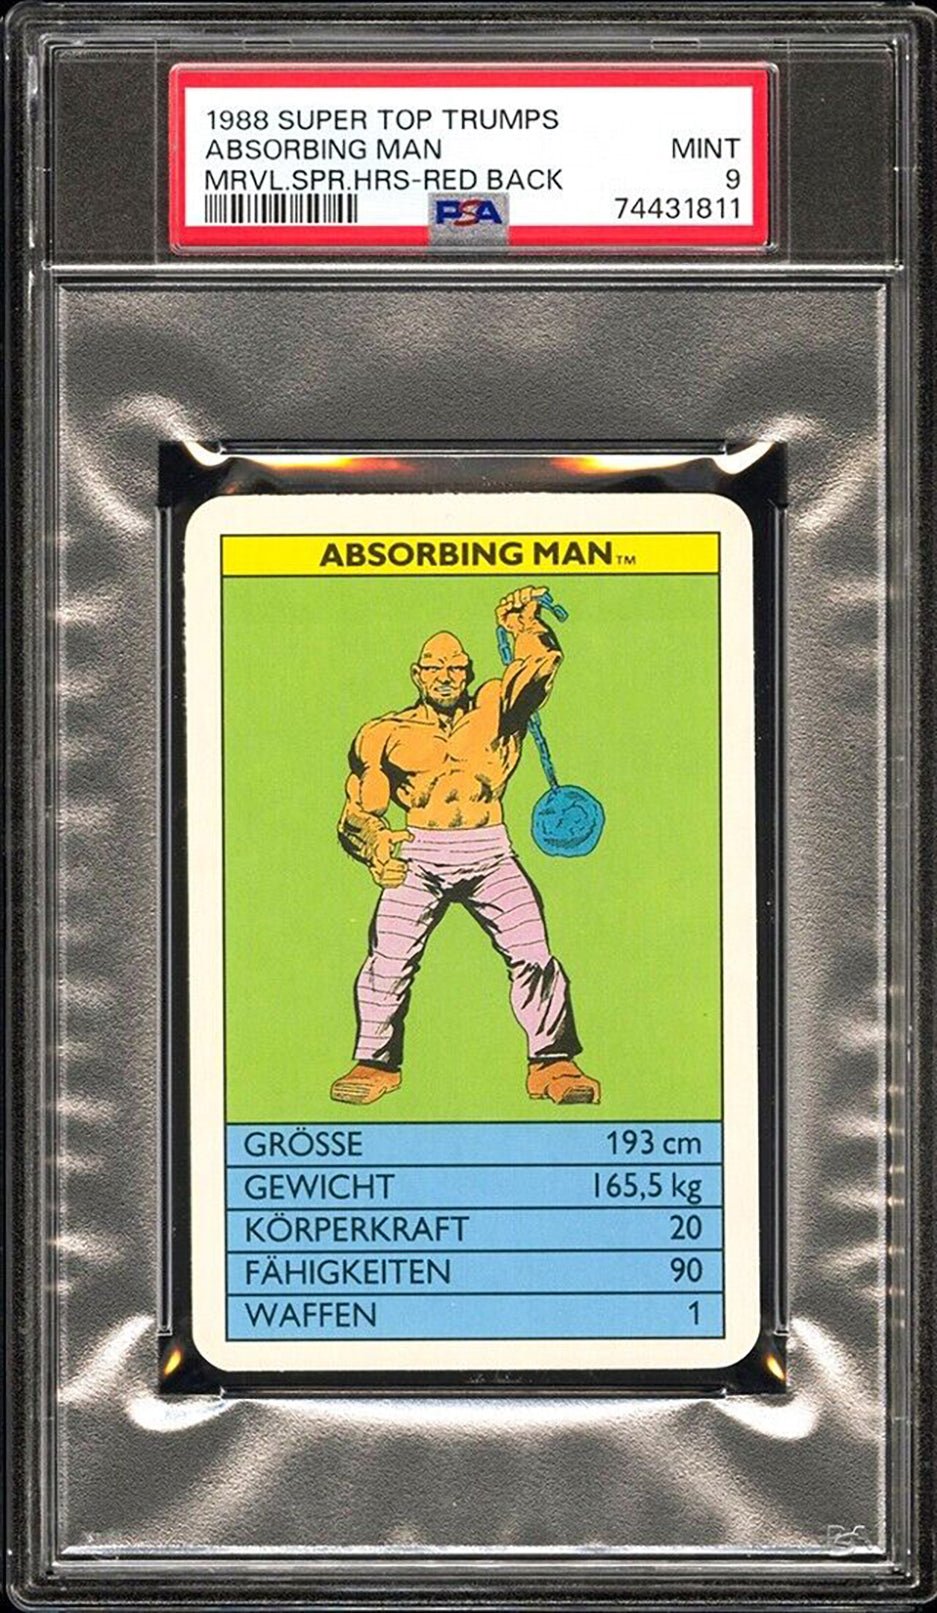 ABSORBING MAN PSA 9 1988 Super Top Trumps Marvel Super Heroes Red Back Marvel Base Graded Cards - Hobby Gems